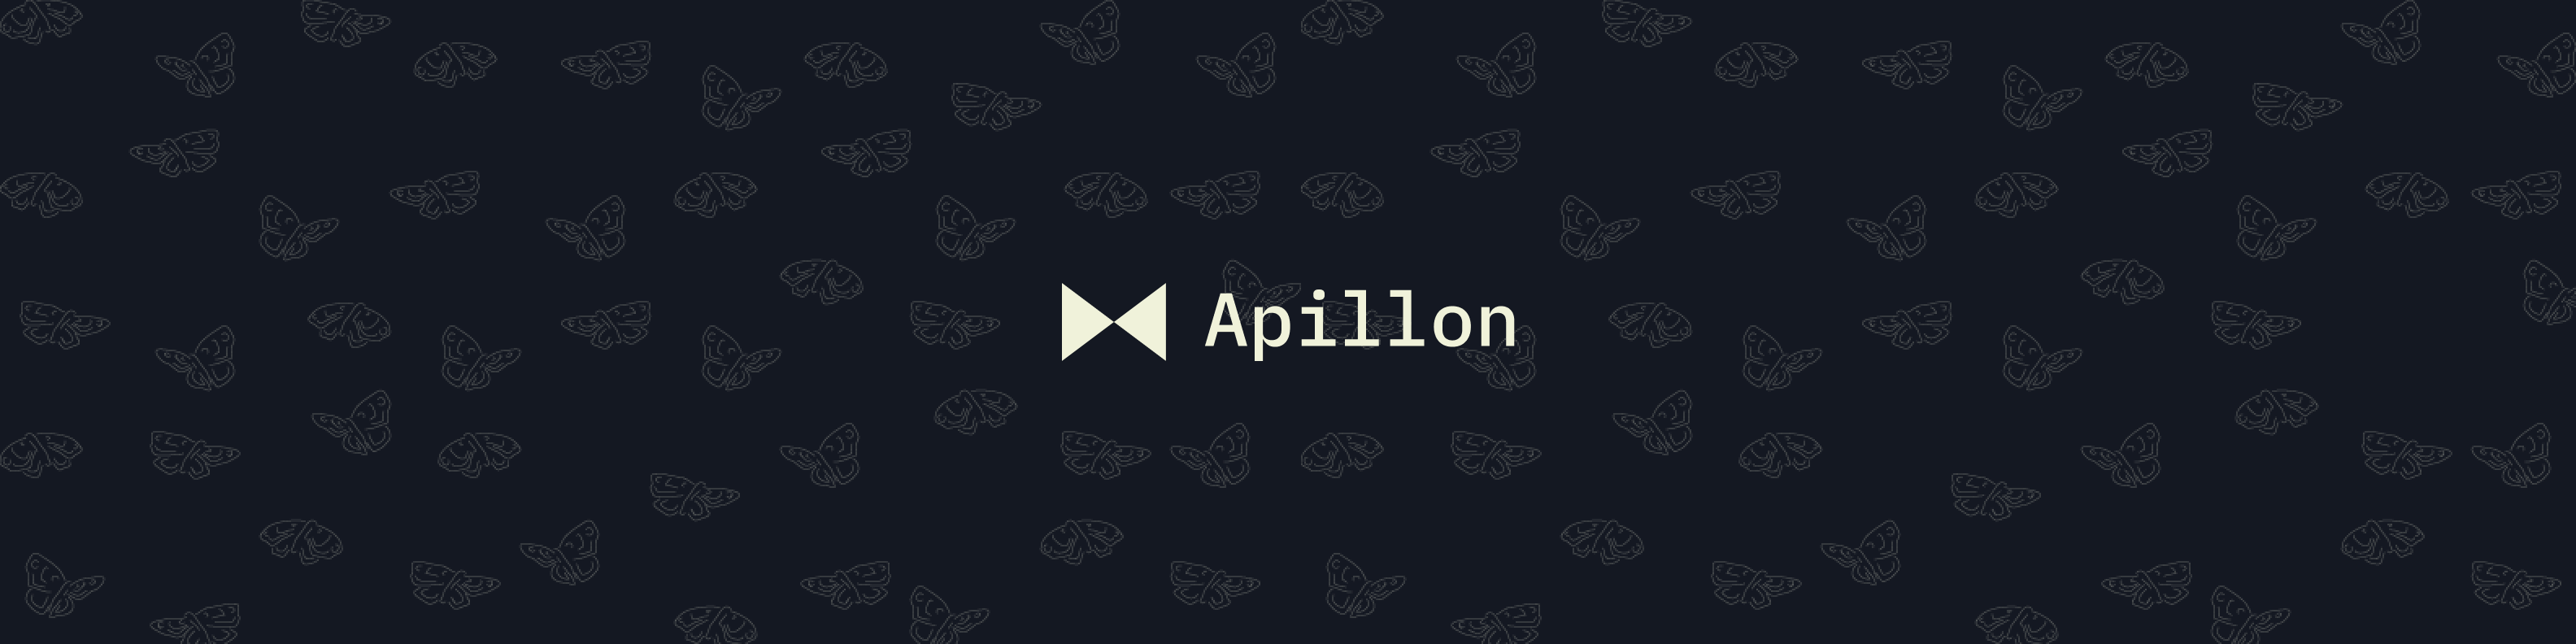 Apillon